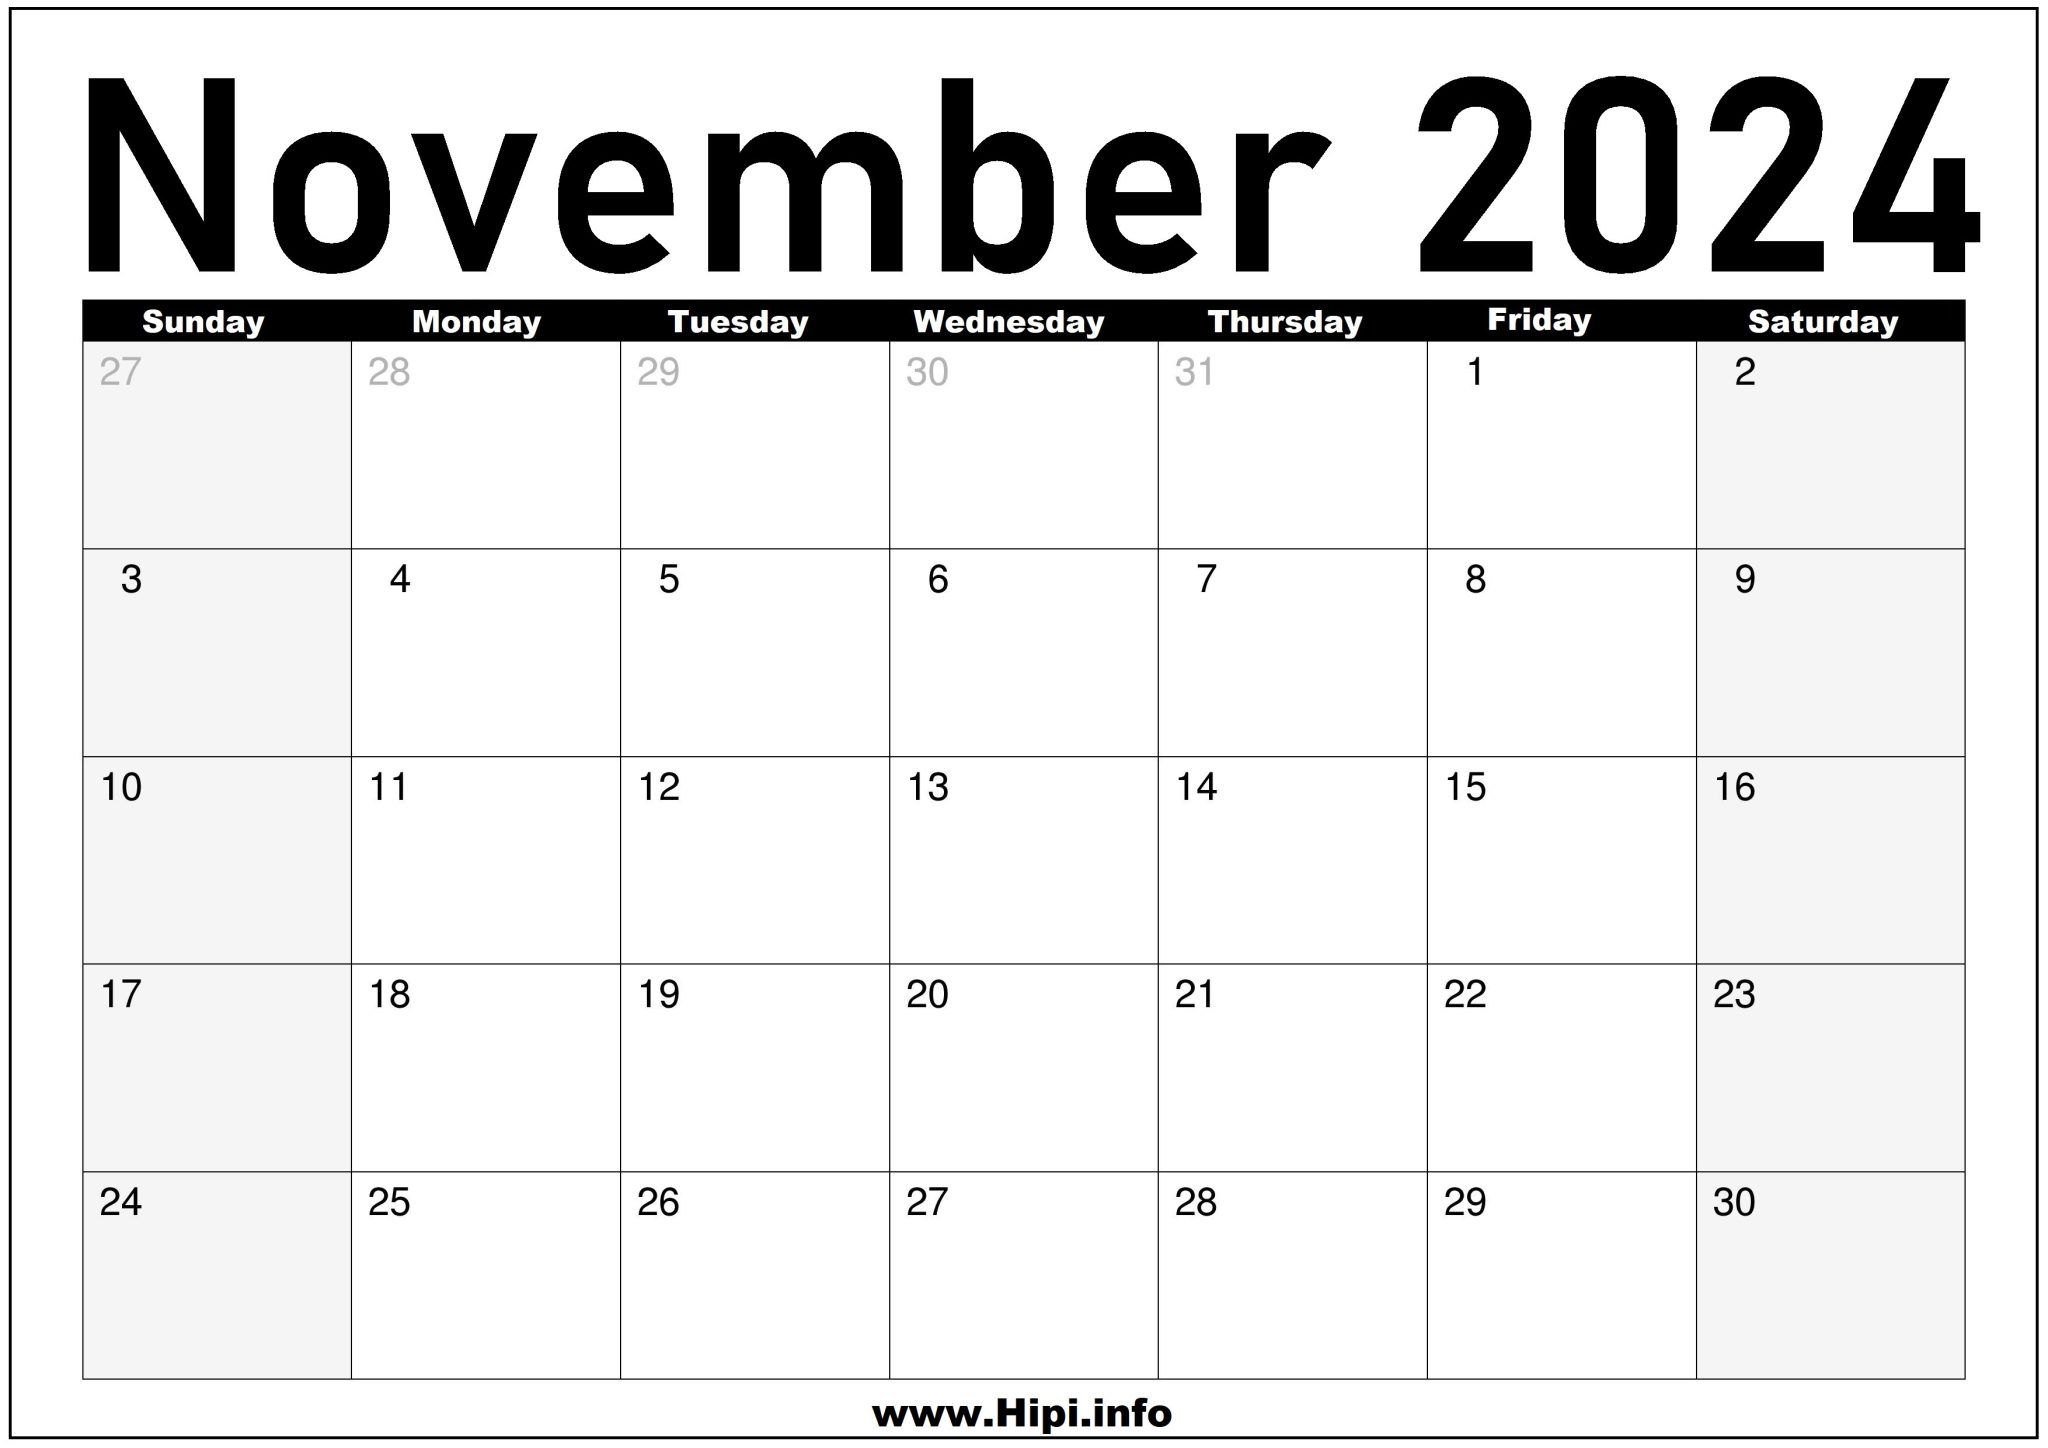 November 2024 Calendar Monthly Hipi.info